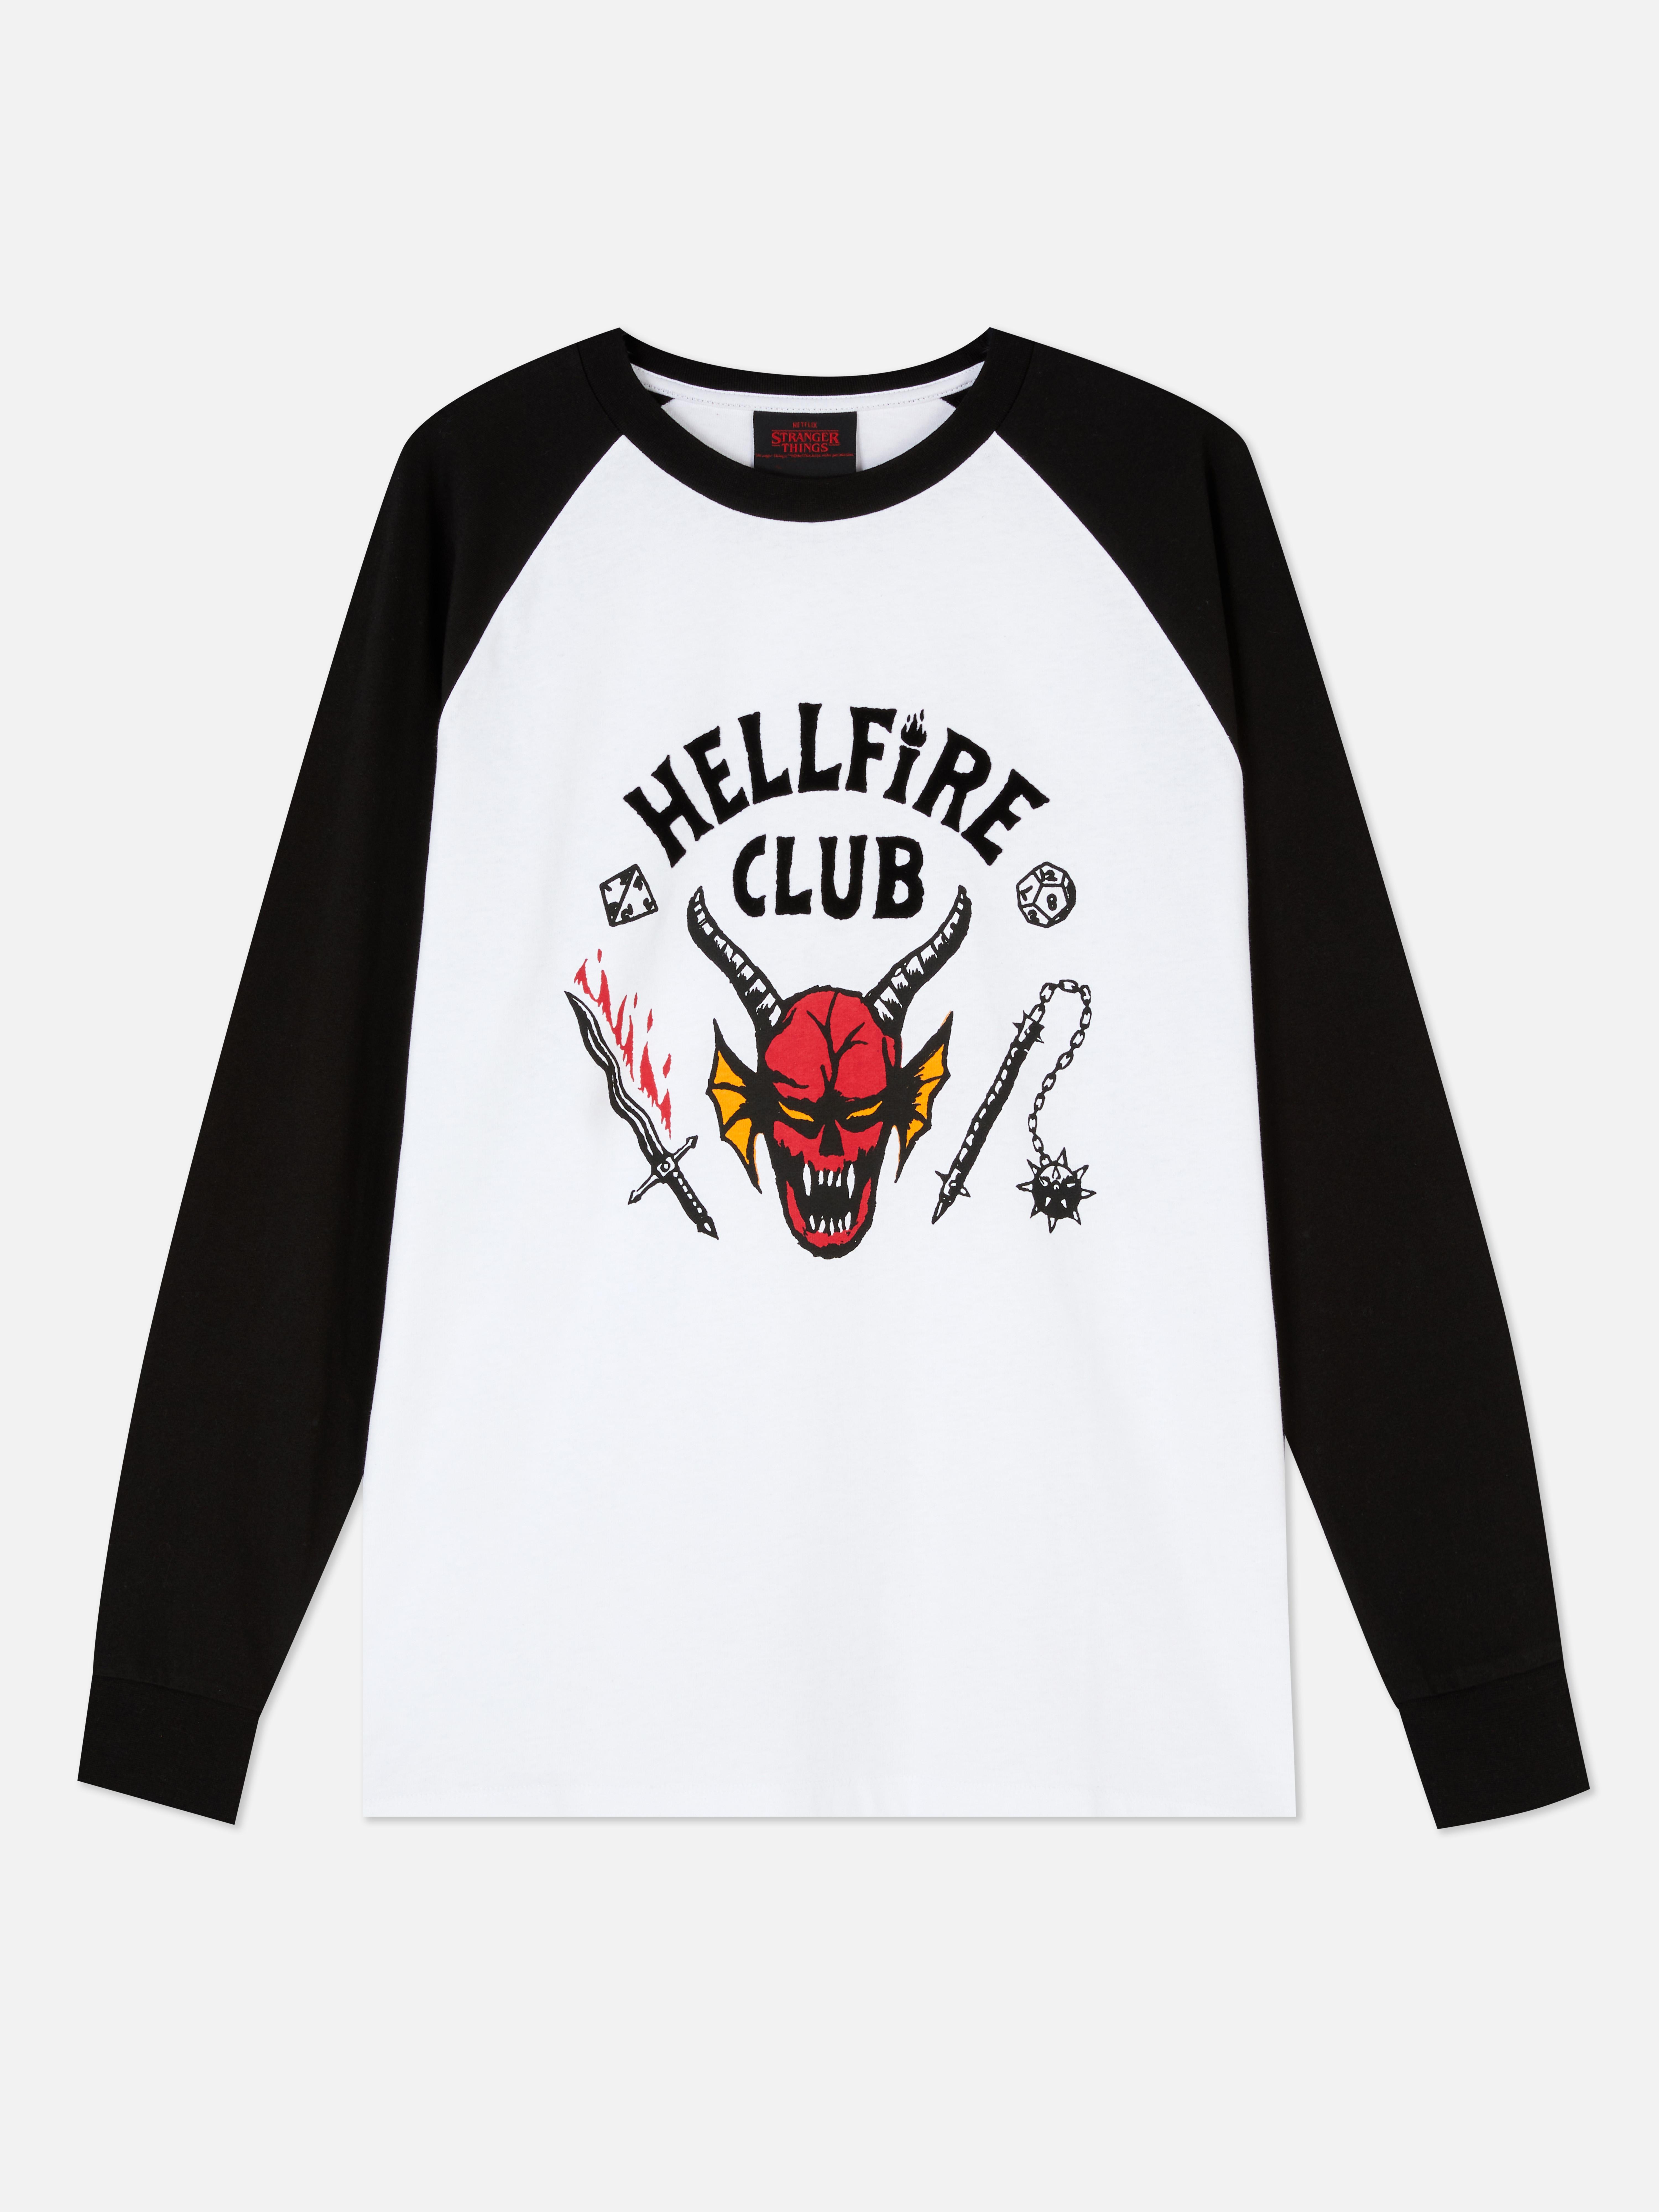 Camiseta de Hellfire Club de Stranger Things | Camisetas para hombre | Camisetas partes de arriba para hombre | Ropa para hombre | Nuestra línea de moda masculina | Todos los productos Primark | Primark España